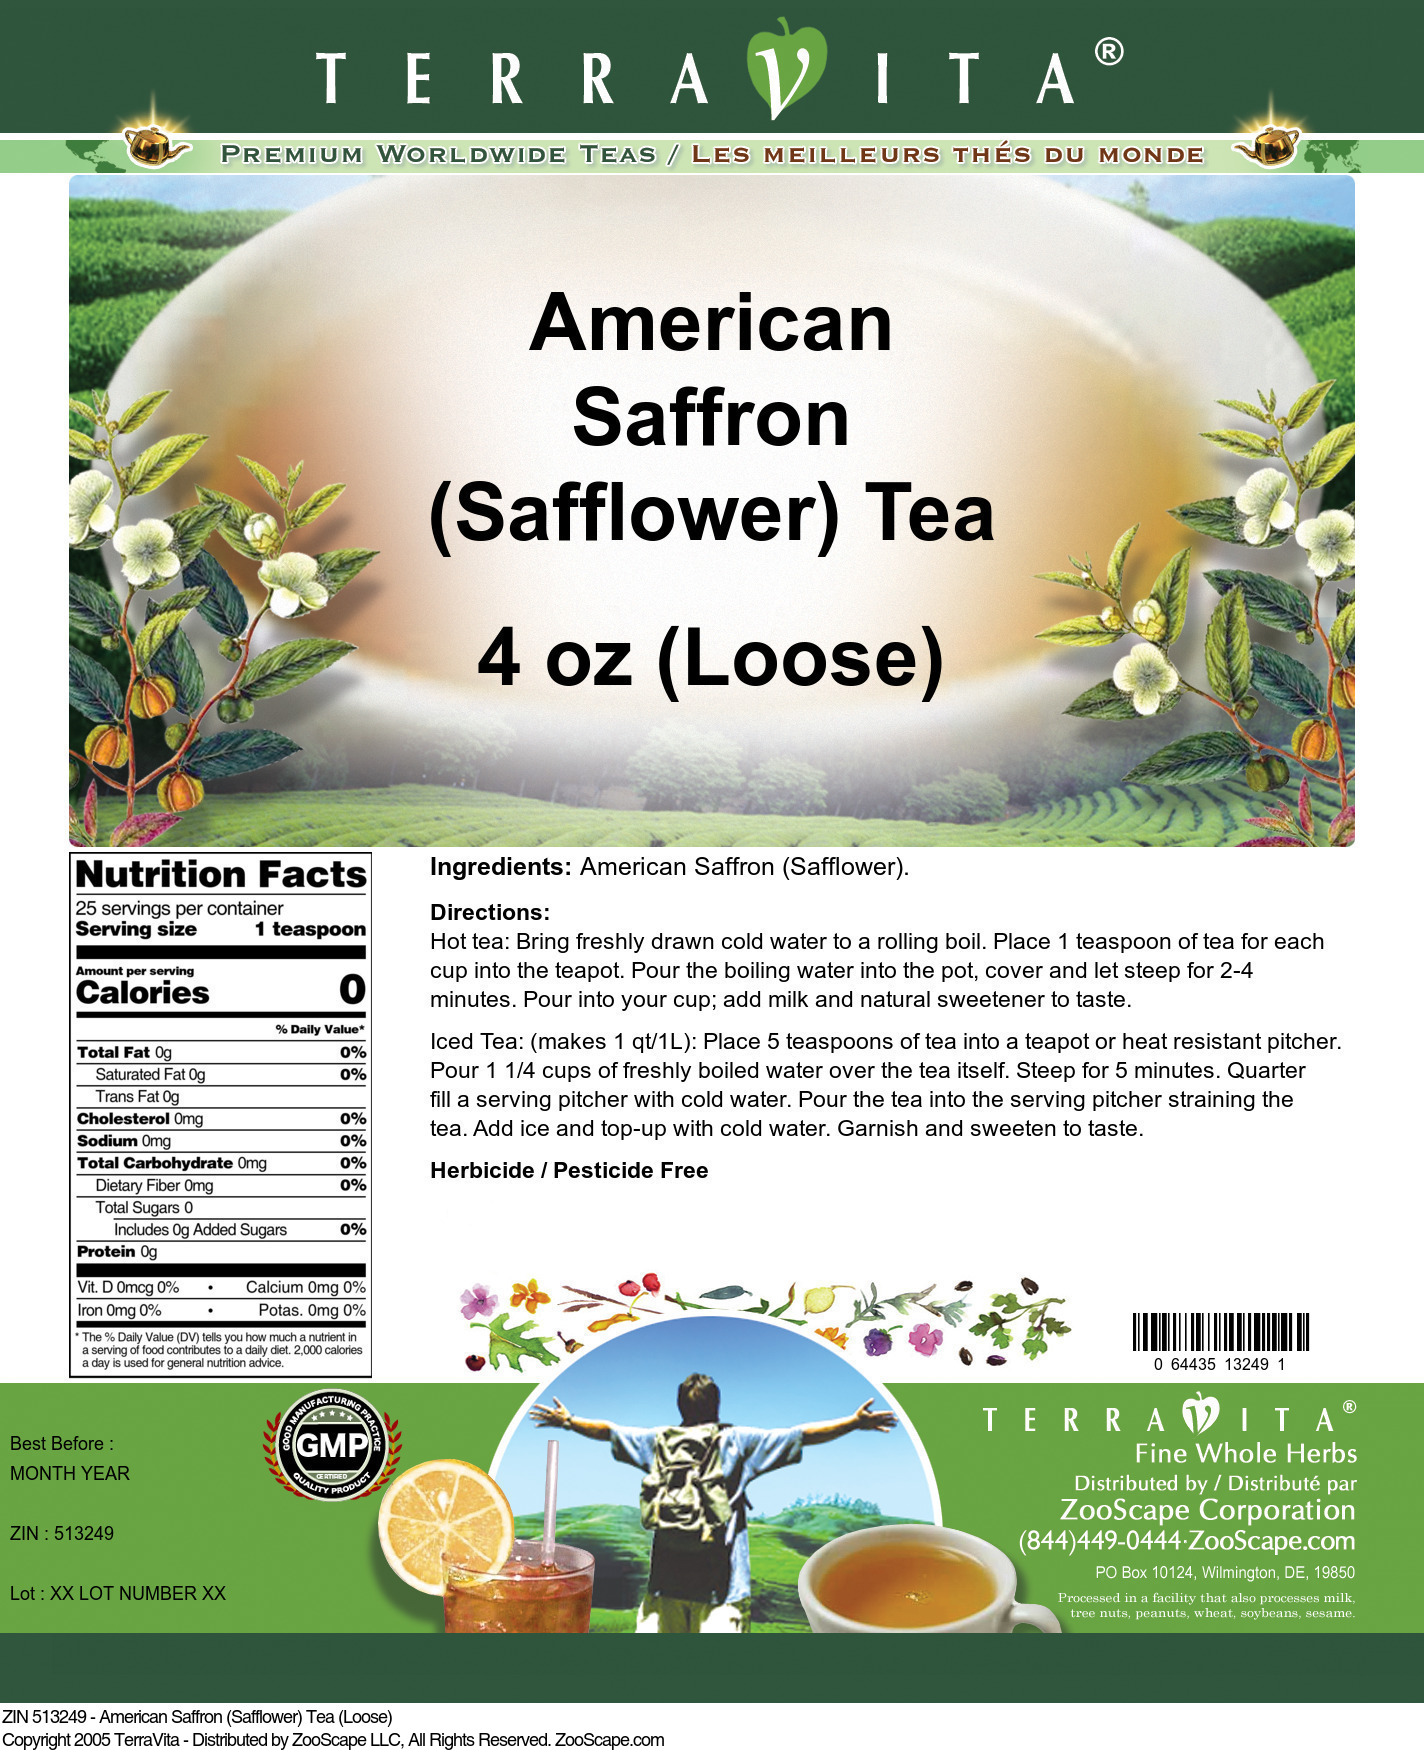 American Saffron (Safflower) Tea (Loose) - Label